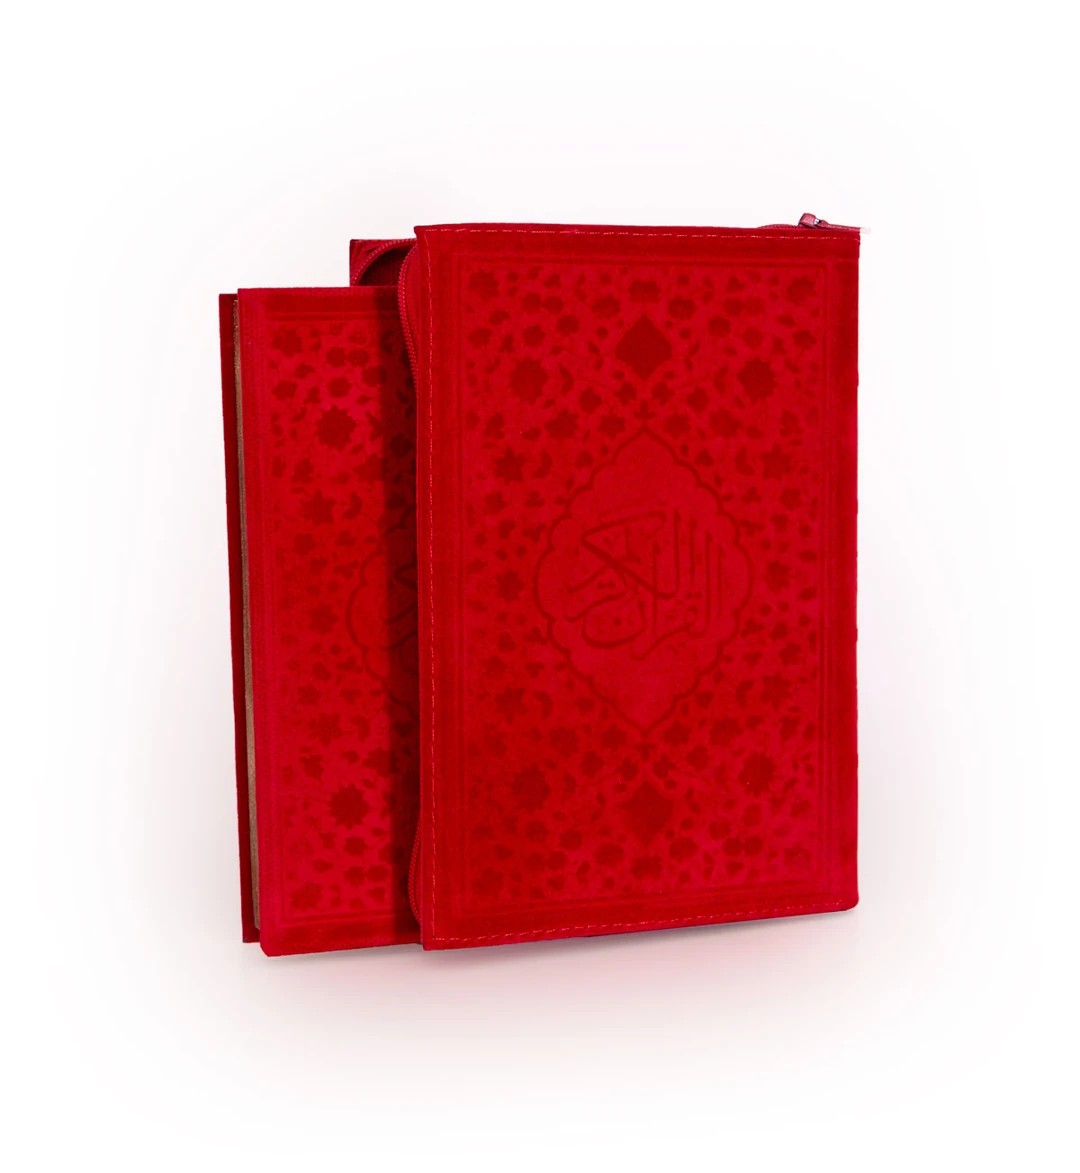 Cep Boy Kadife Kılıflı Kur'an-ı Kerim (Kırmızı Renk)